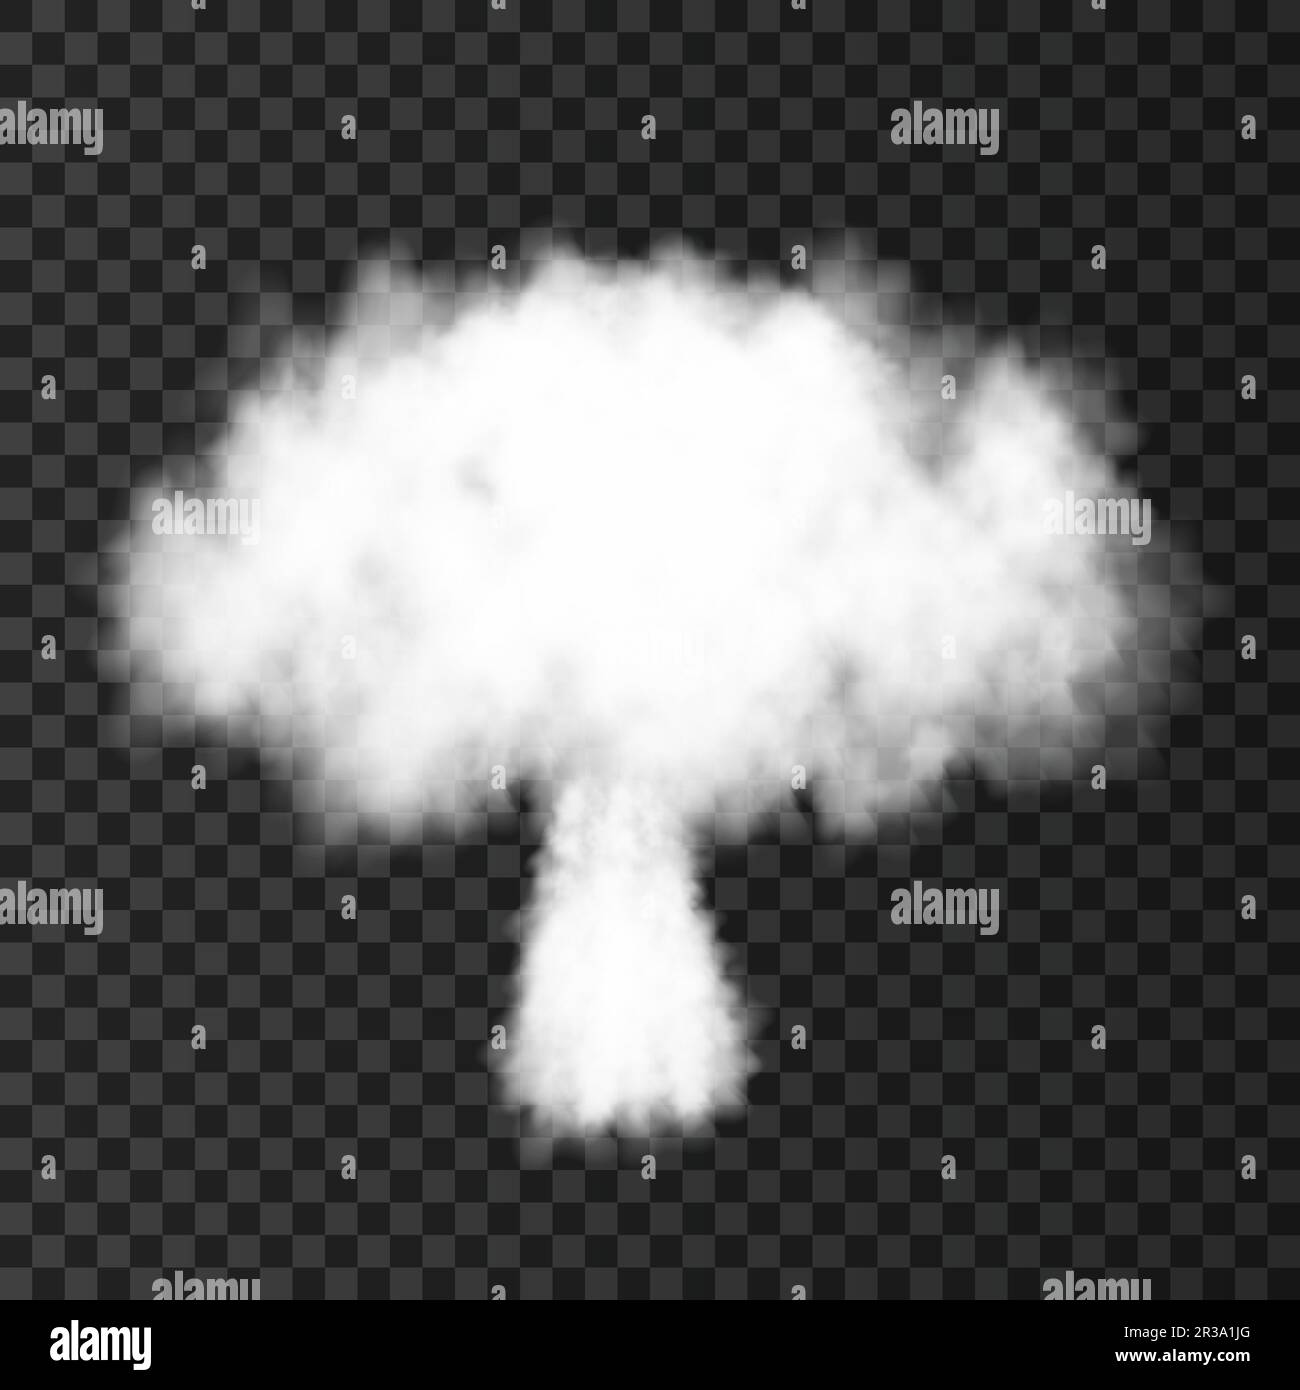 Esplosione nucleare. Fumo da lancio militare razzo. Bomba atomica isolata su sfondo trasparente. Trama vettoriale di guerra realistica. Illustrazione Vettoriale